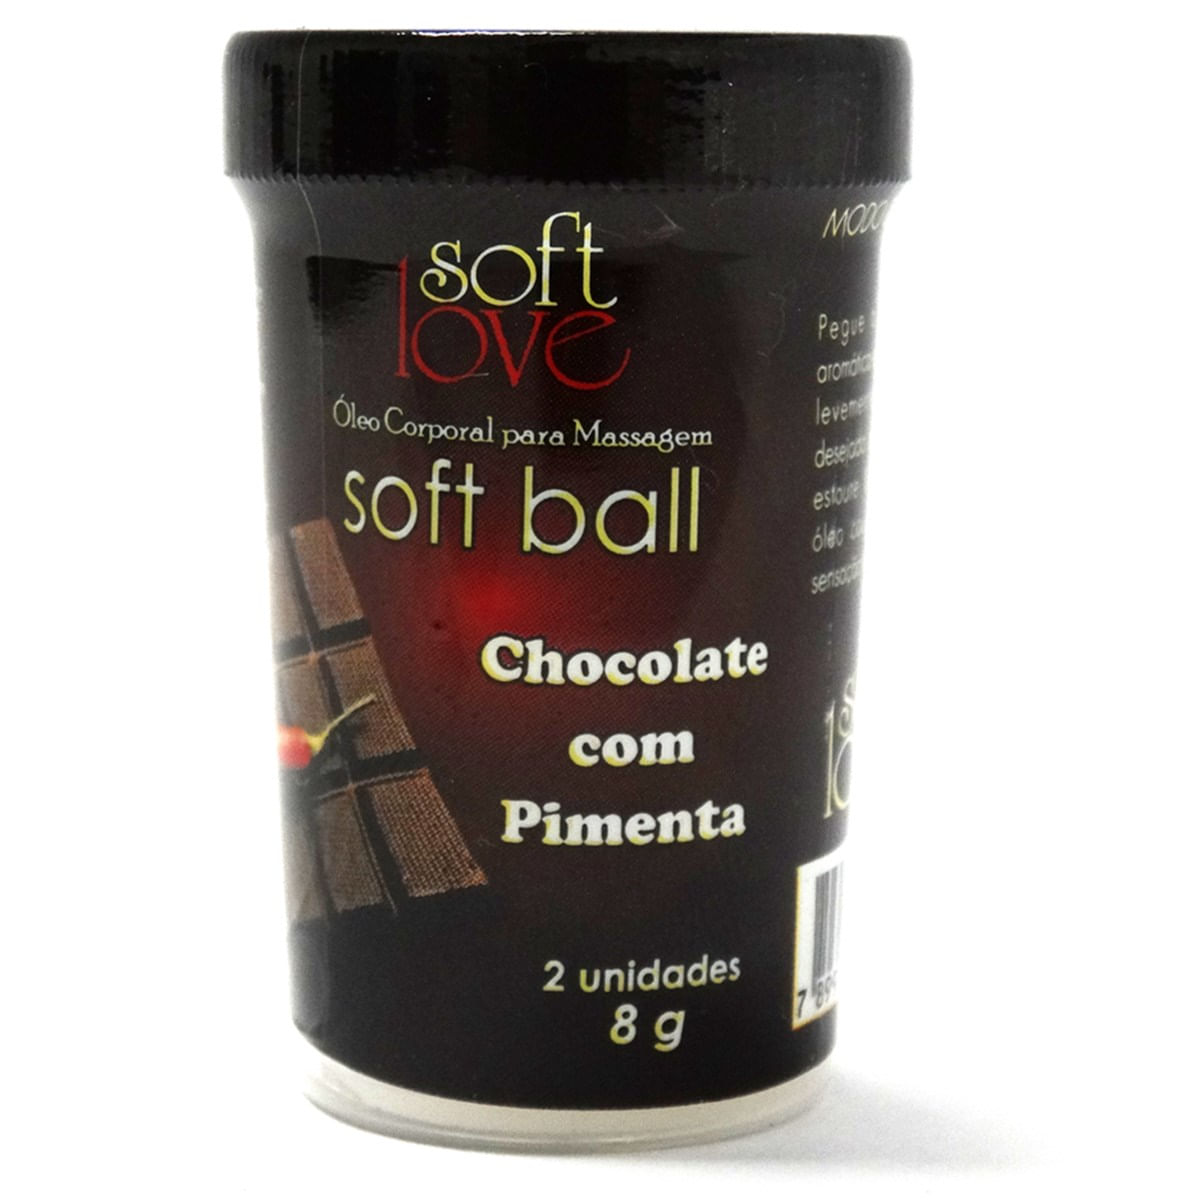 Soft Ball Chocolate com Pimenta Óleo Corporal para Massagem Beijável 2 uni Soft Love